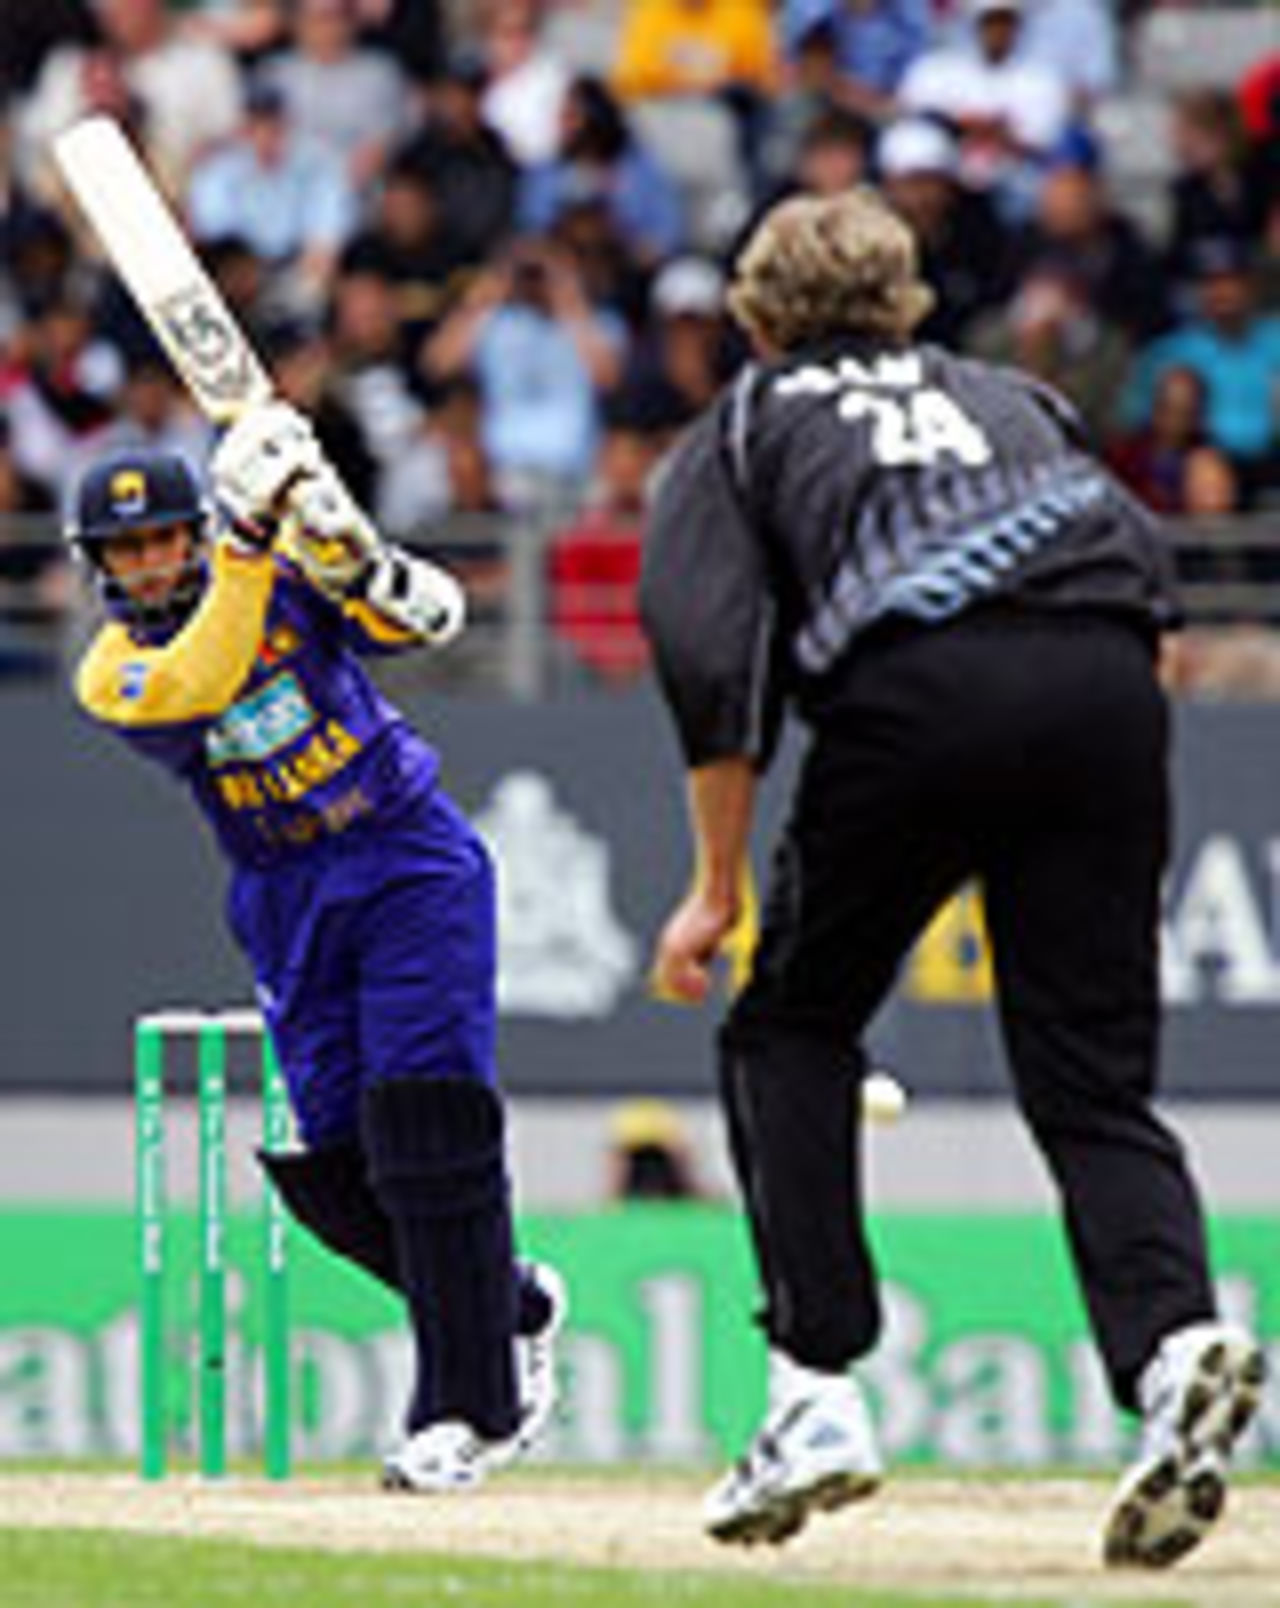 Tillakaratne Dilshan takes on the bowling, New Zealand v Sri Lanka, 1st ODI, Auckland, December 26, 2004